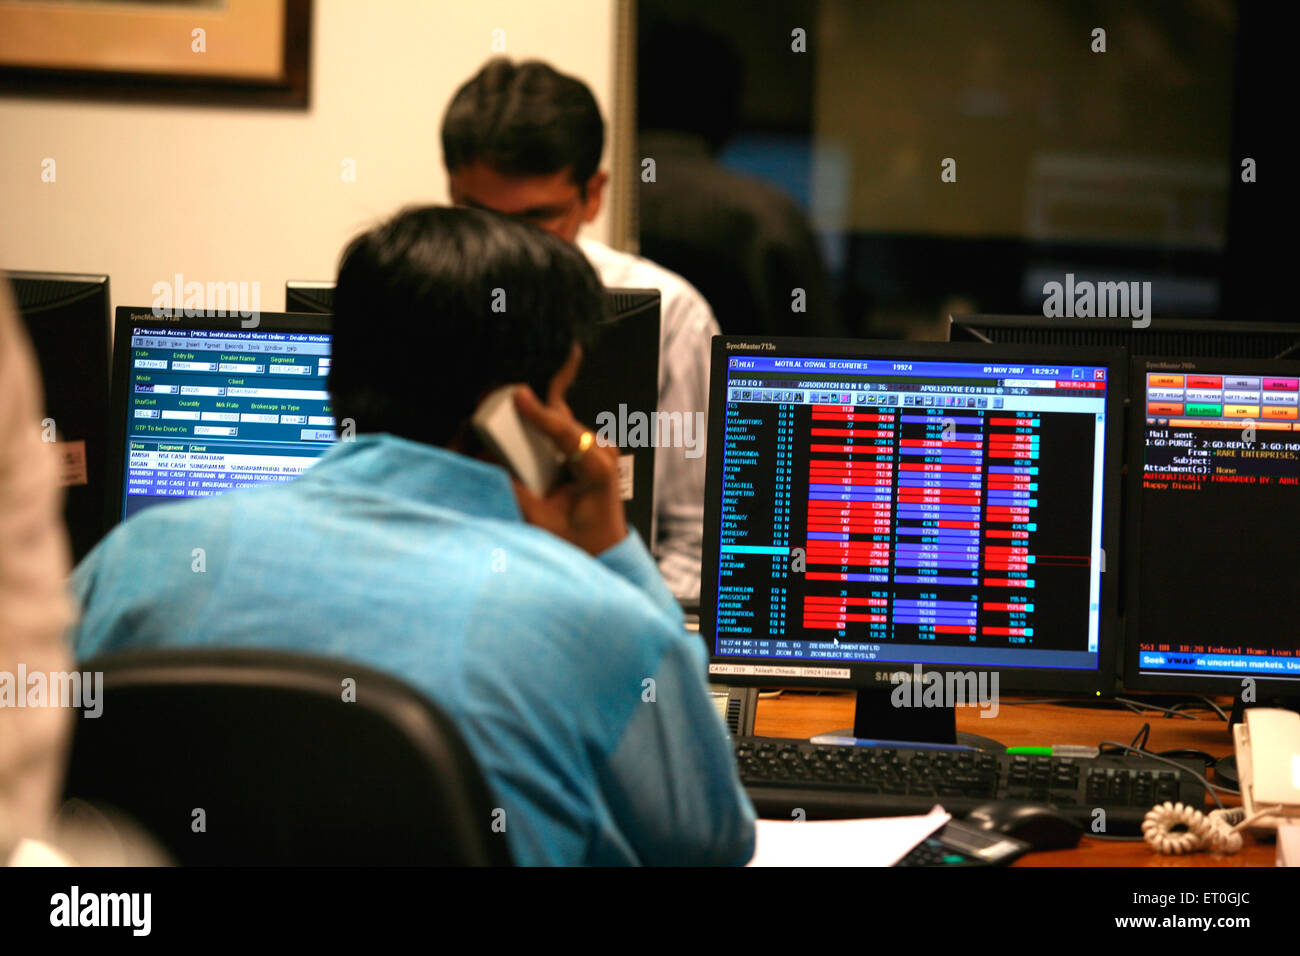 Börsenmakler, die muhurat handeln, markieren den Beginn des neuen Handelsjahres, nachdem Lakshmi puja pooja vom Börsenmakler Bombay Mumbai India durchgeführt wurde Stockfoto